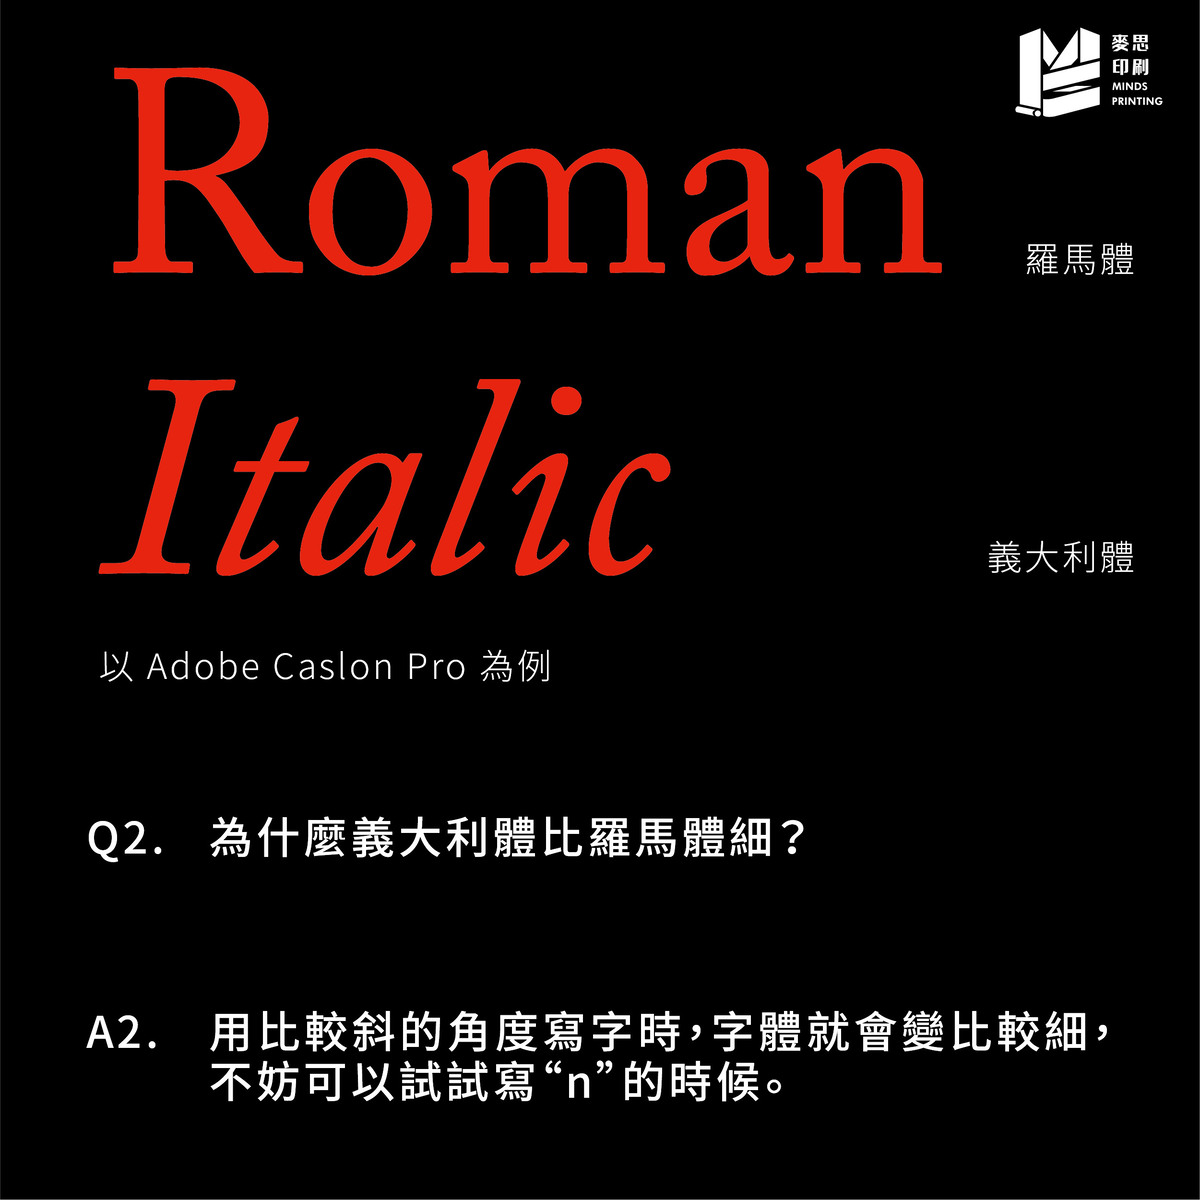 羅馬體與義大利體的差別在哪裡？－為什麼義大利體比羅馬體細？